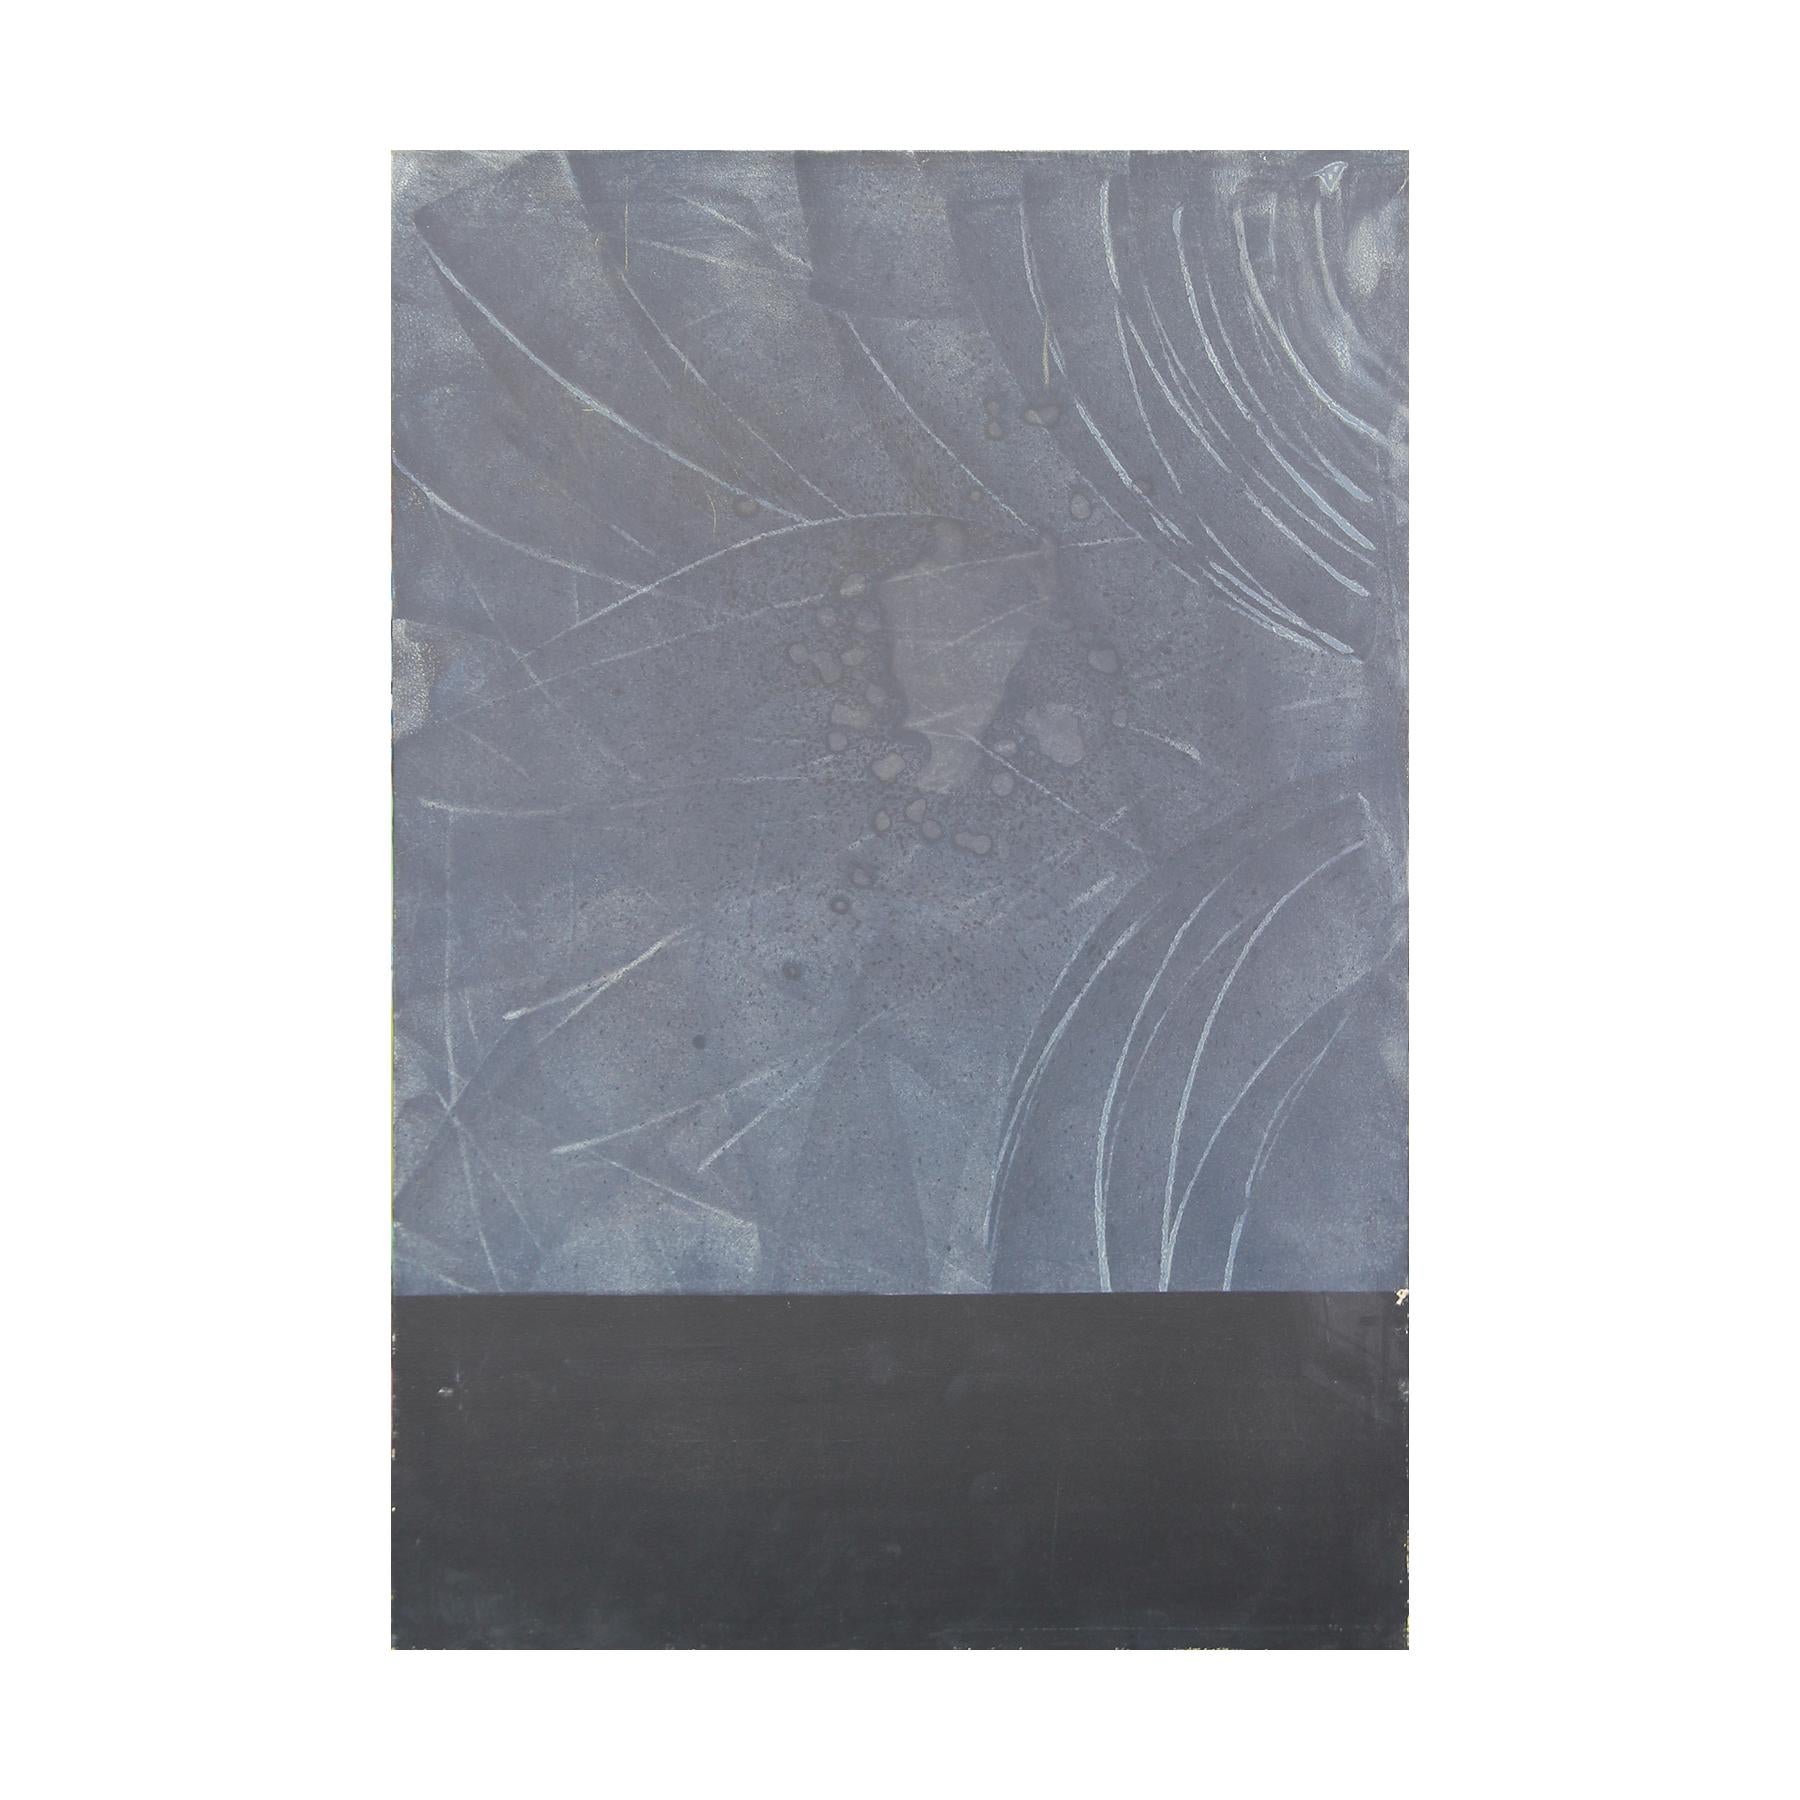 Peinture moderne abstraite de couleur noire et grise, dans le style de Mark Rothko.